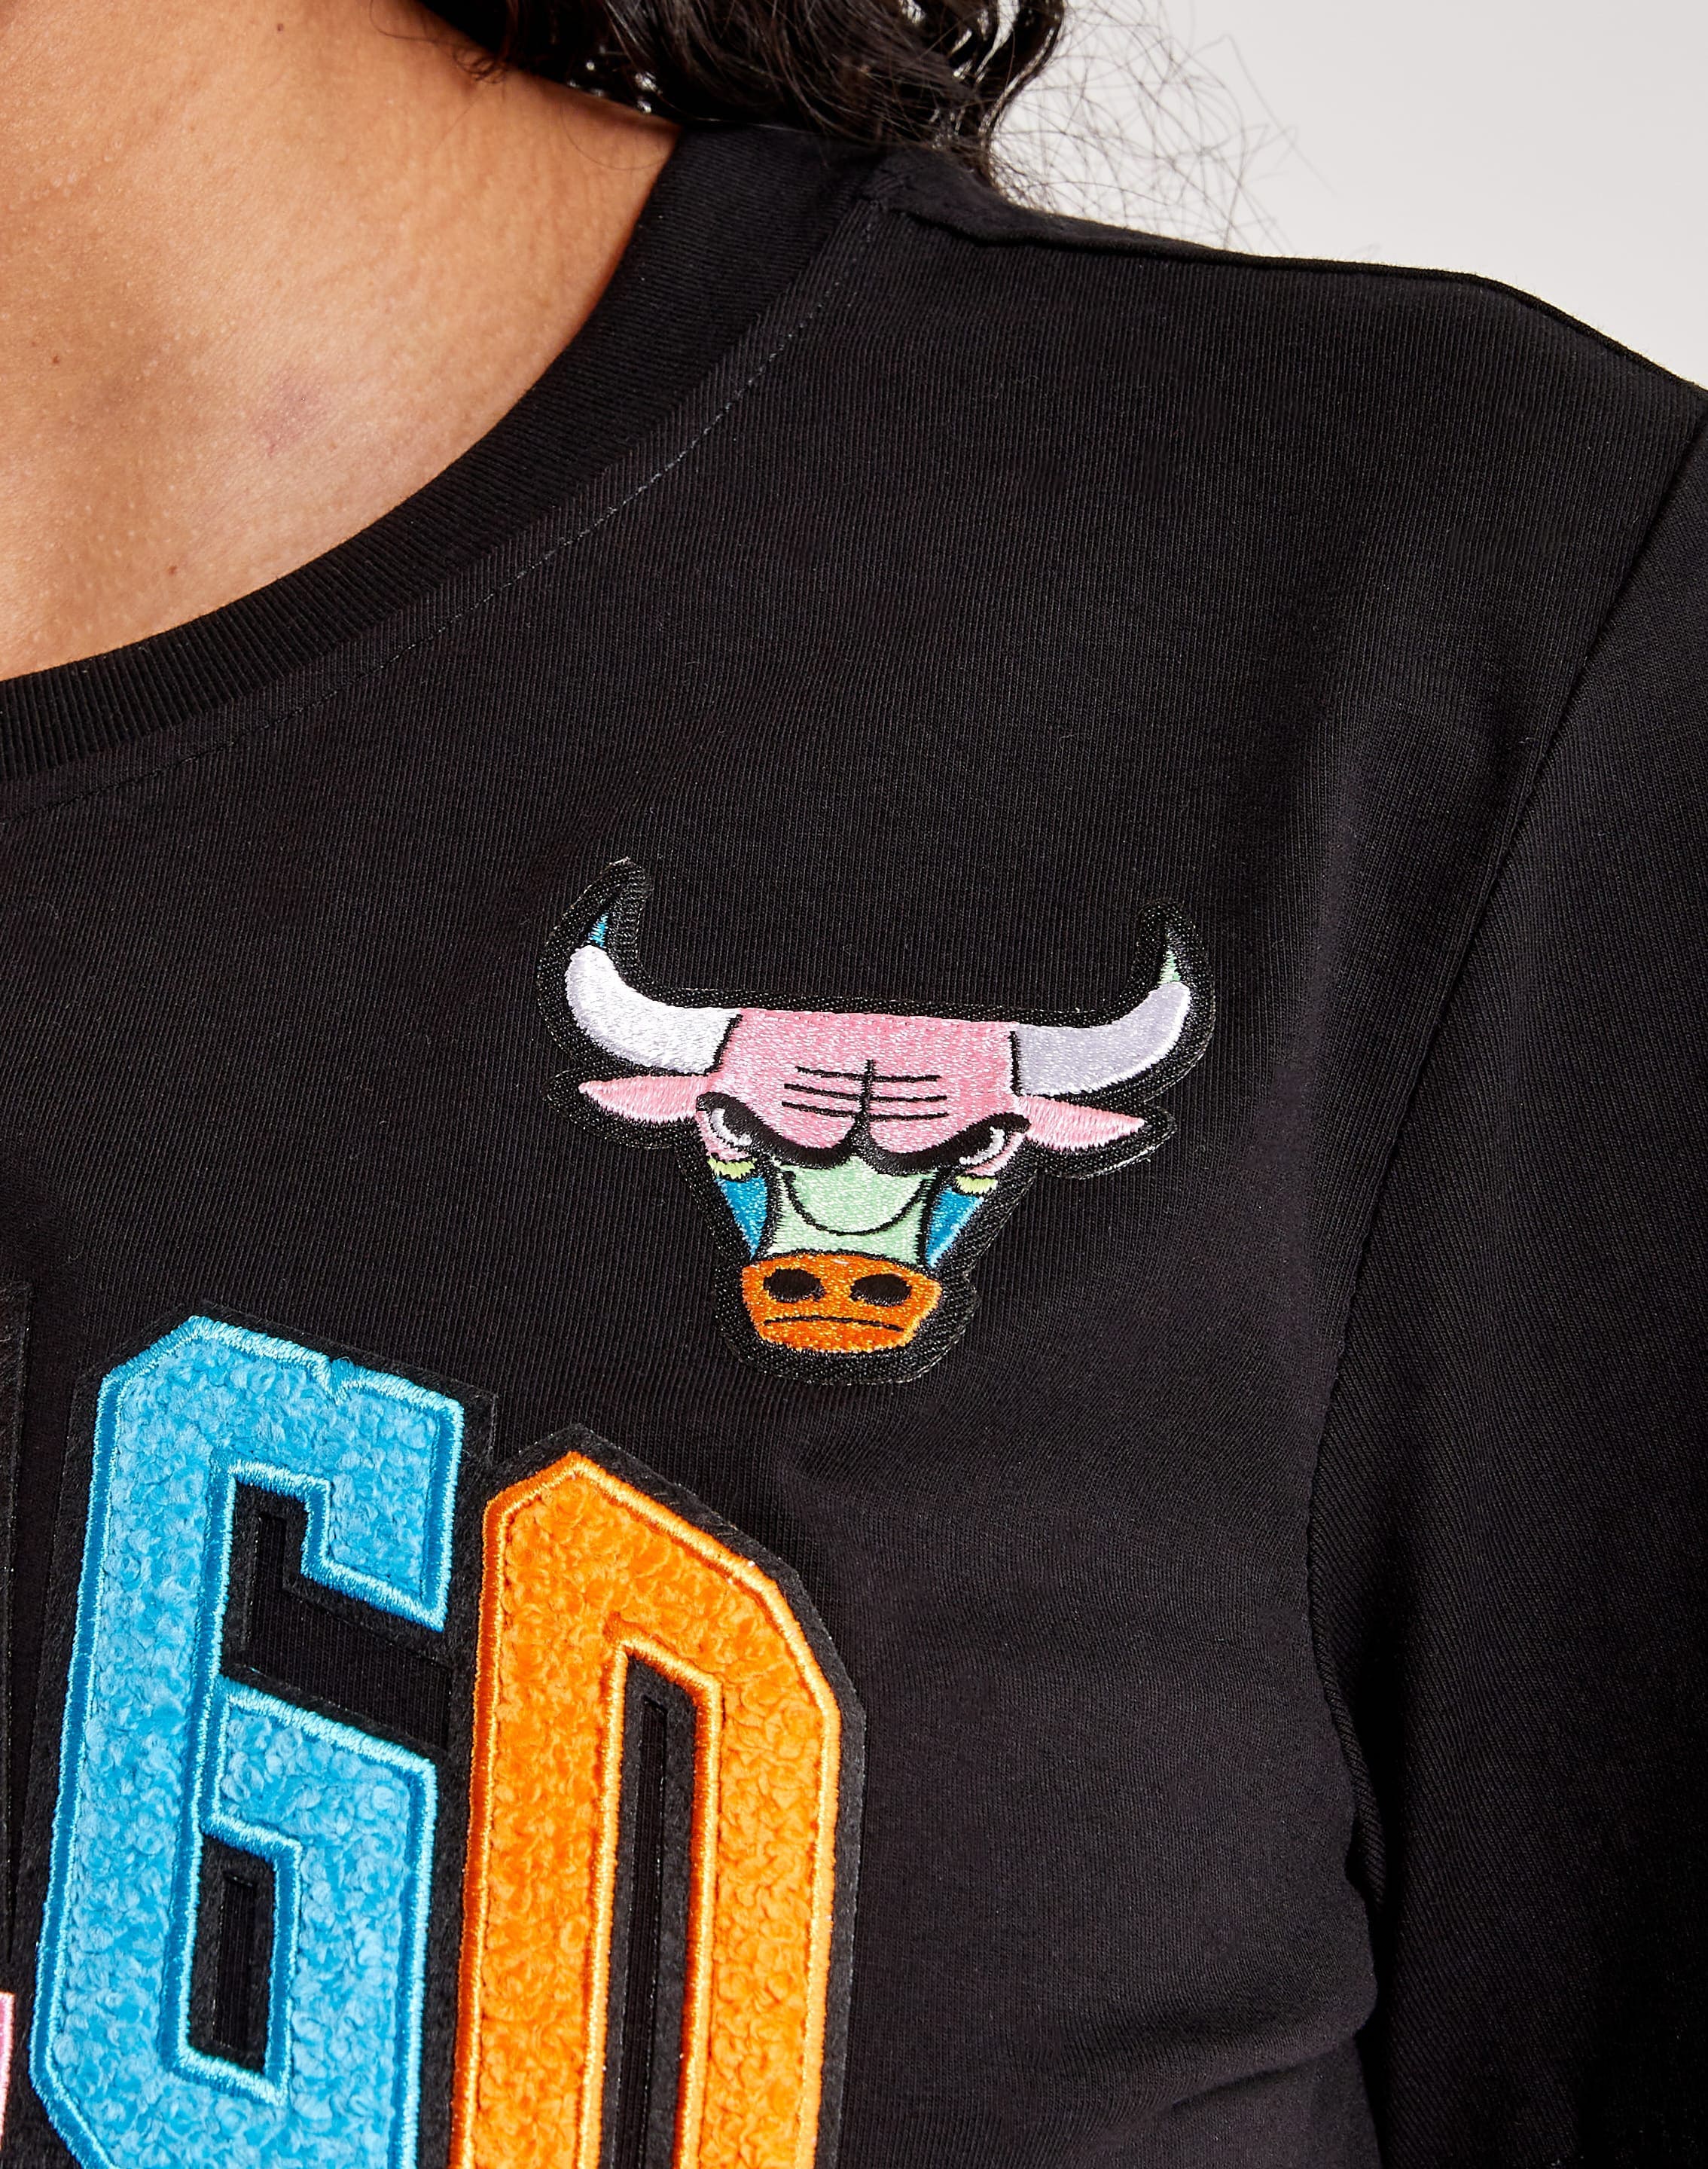 Nike Chicago Bulls V-Neck Tee – DTLR